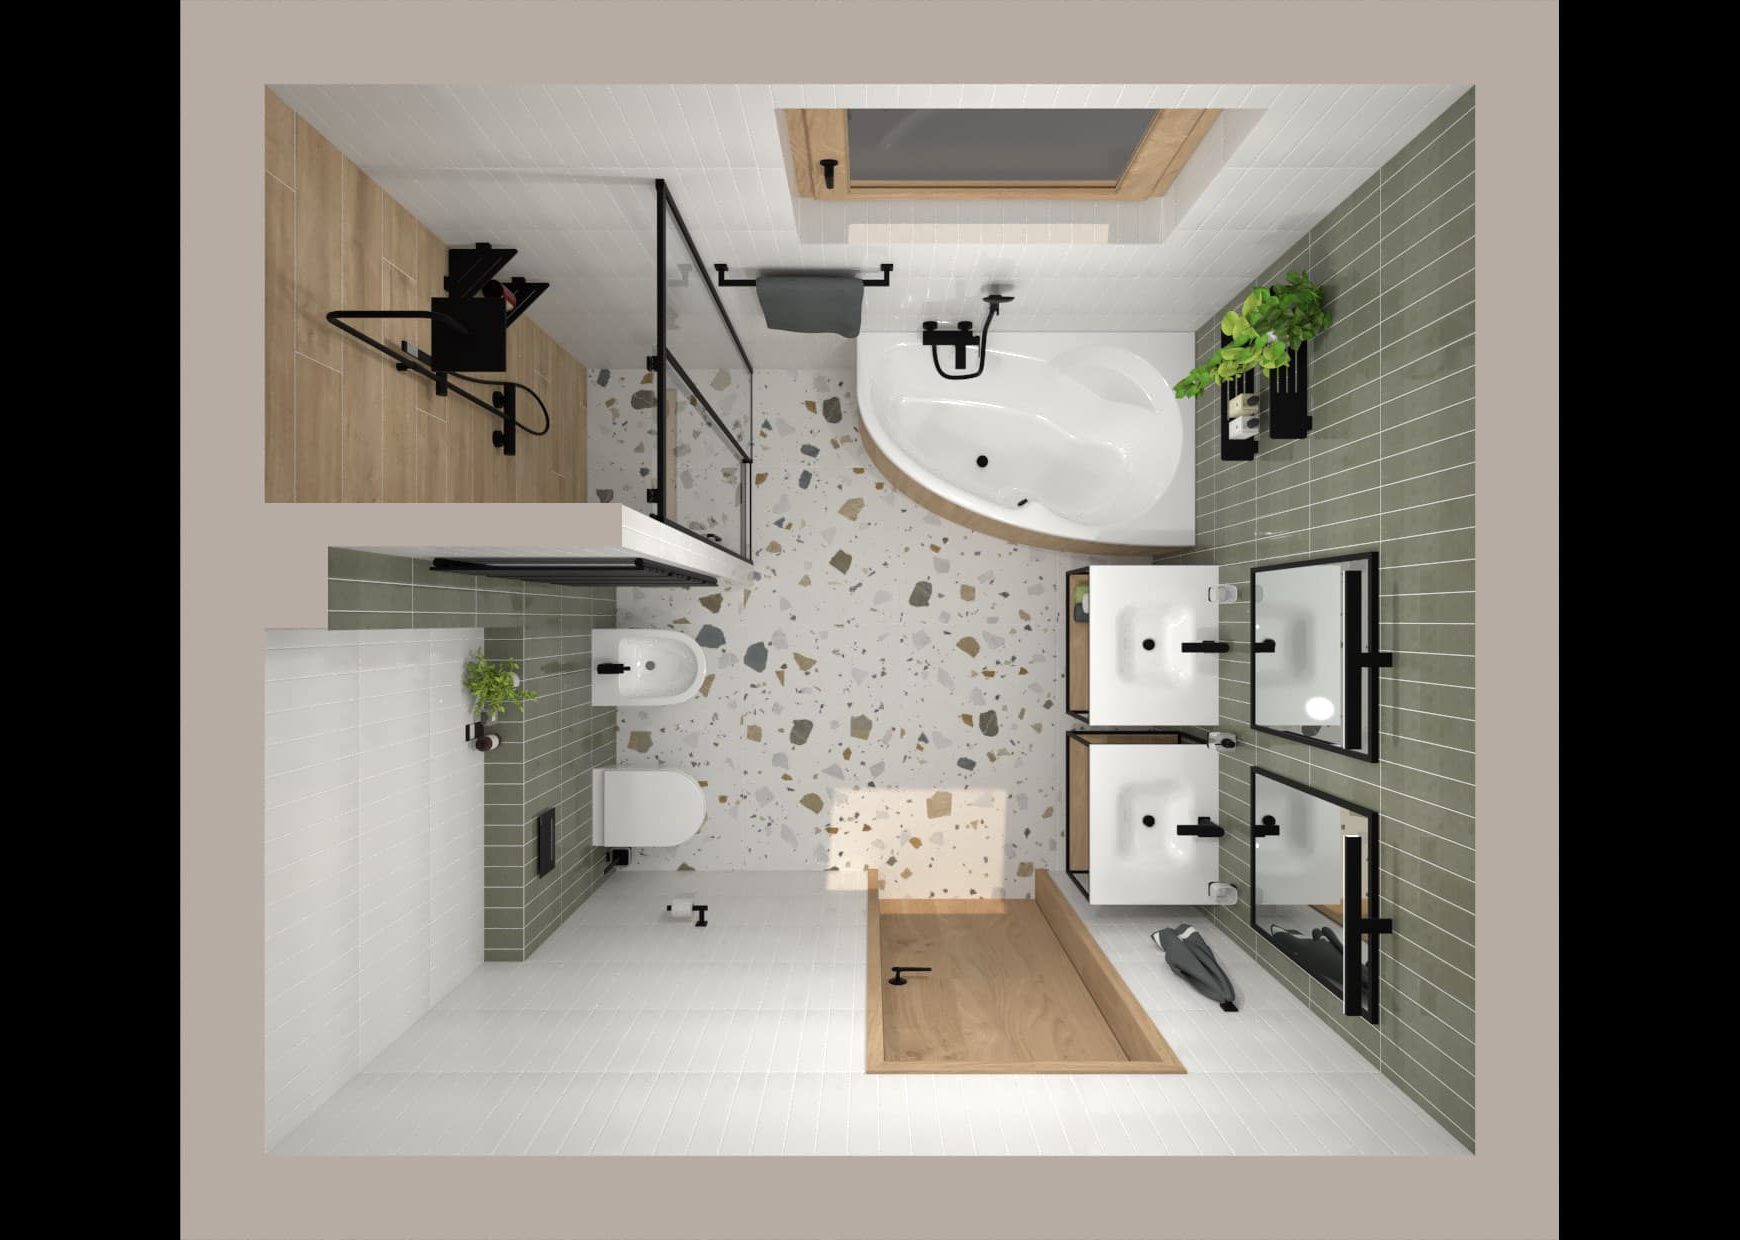 SIKO Grafický návrh koupelny s vanou a sprchovým koutem, pohled shora pro dokonalou představu o rozmístění zařizovacíh předmětů.